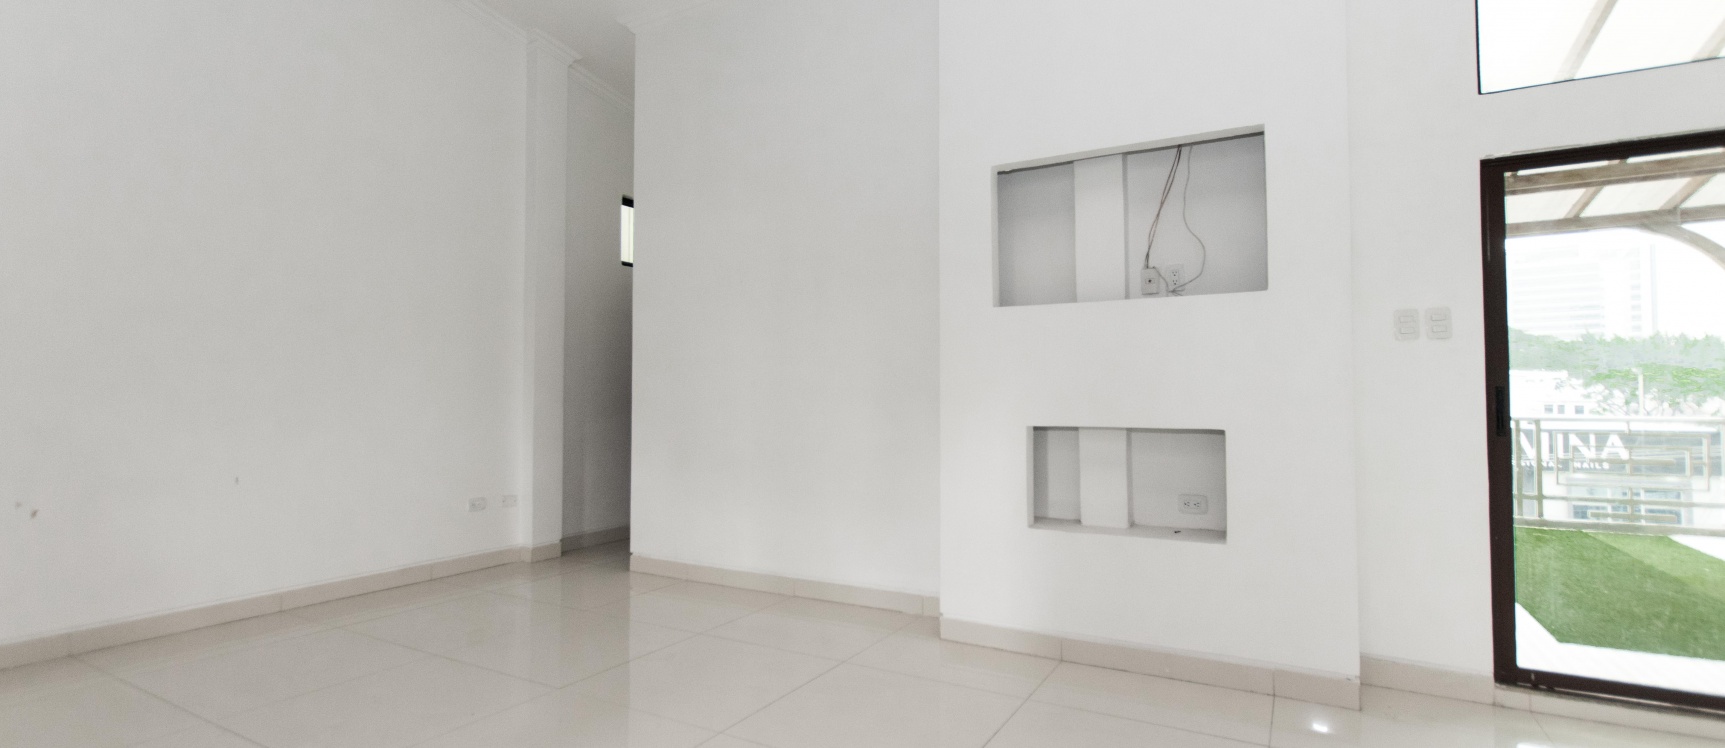 GeoBienes - Moderno Penthouse de dos pisos en alquiler ubicado en Kennedy Norte - Plusvalia Guayaquil Casas de venta y alquiler Inmobiliaria Ecuador